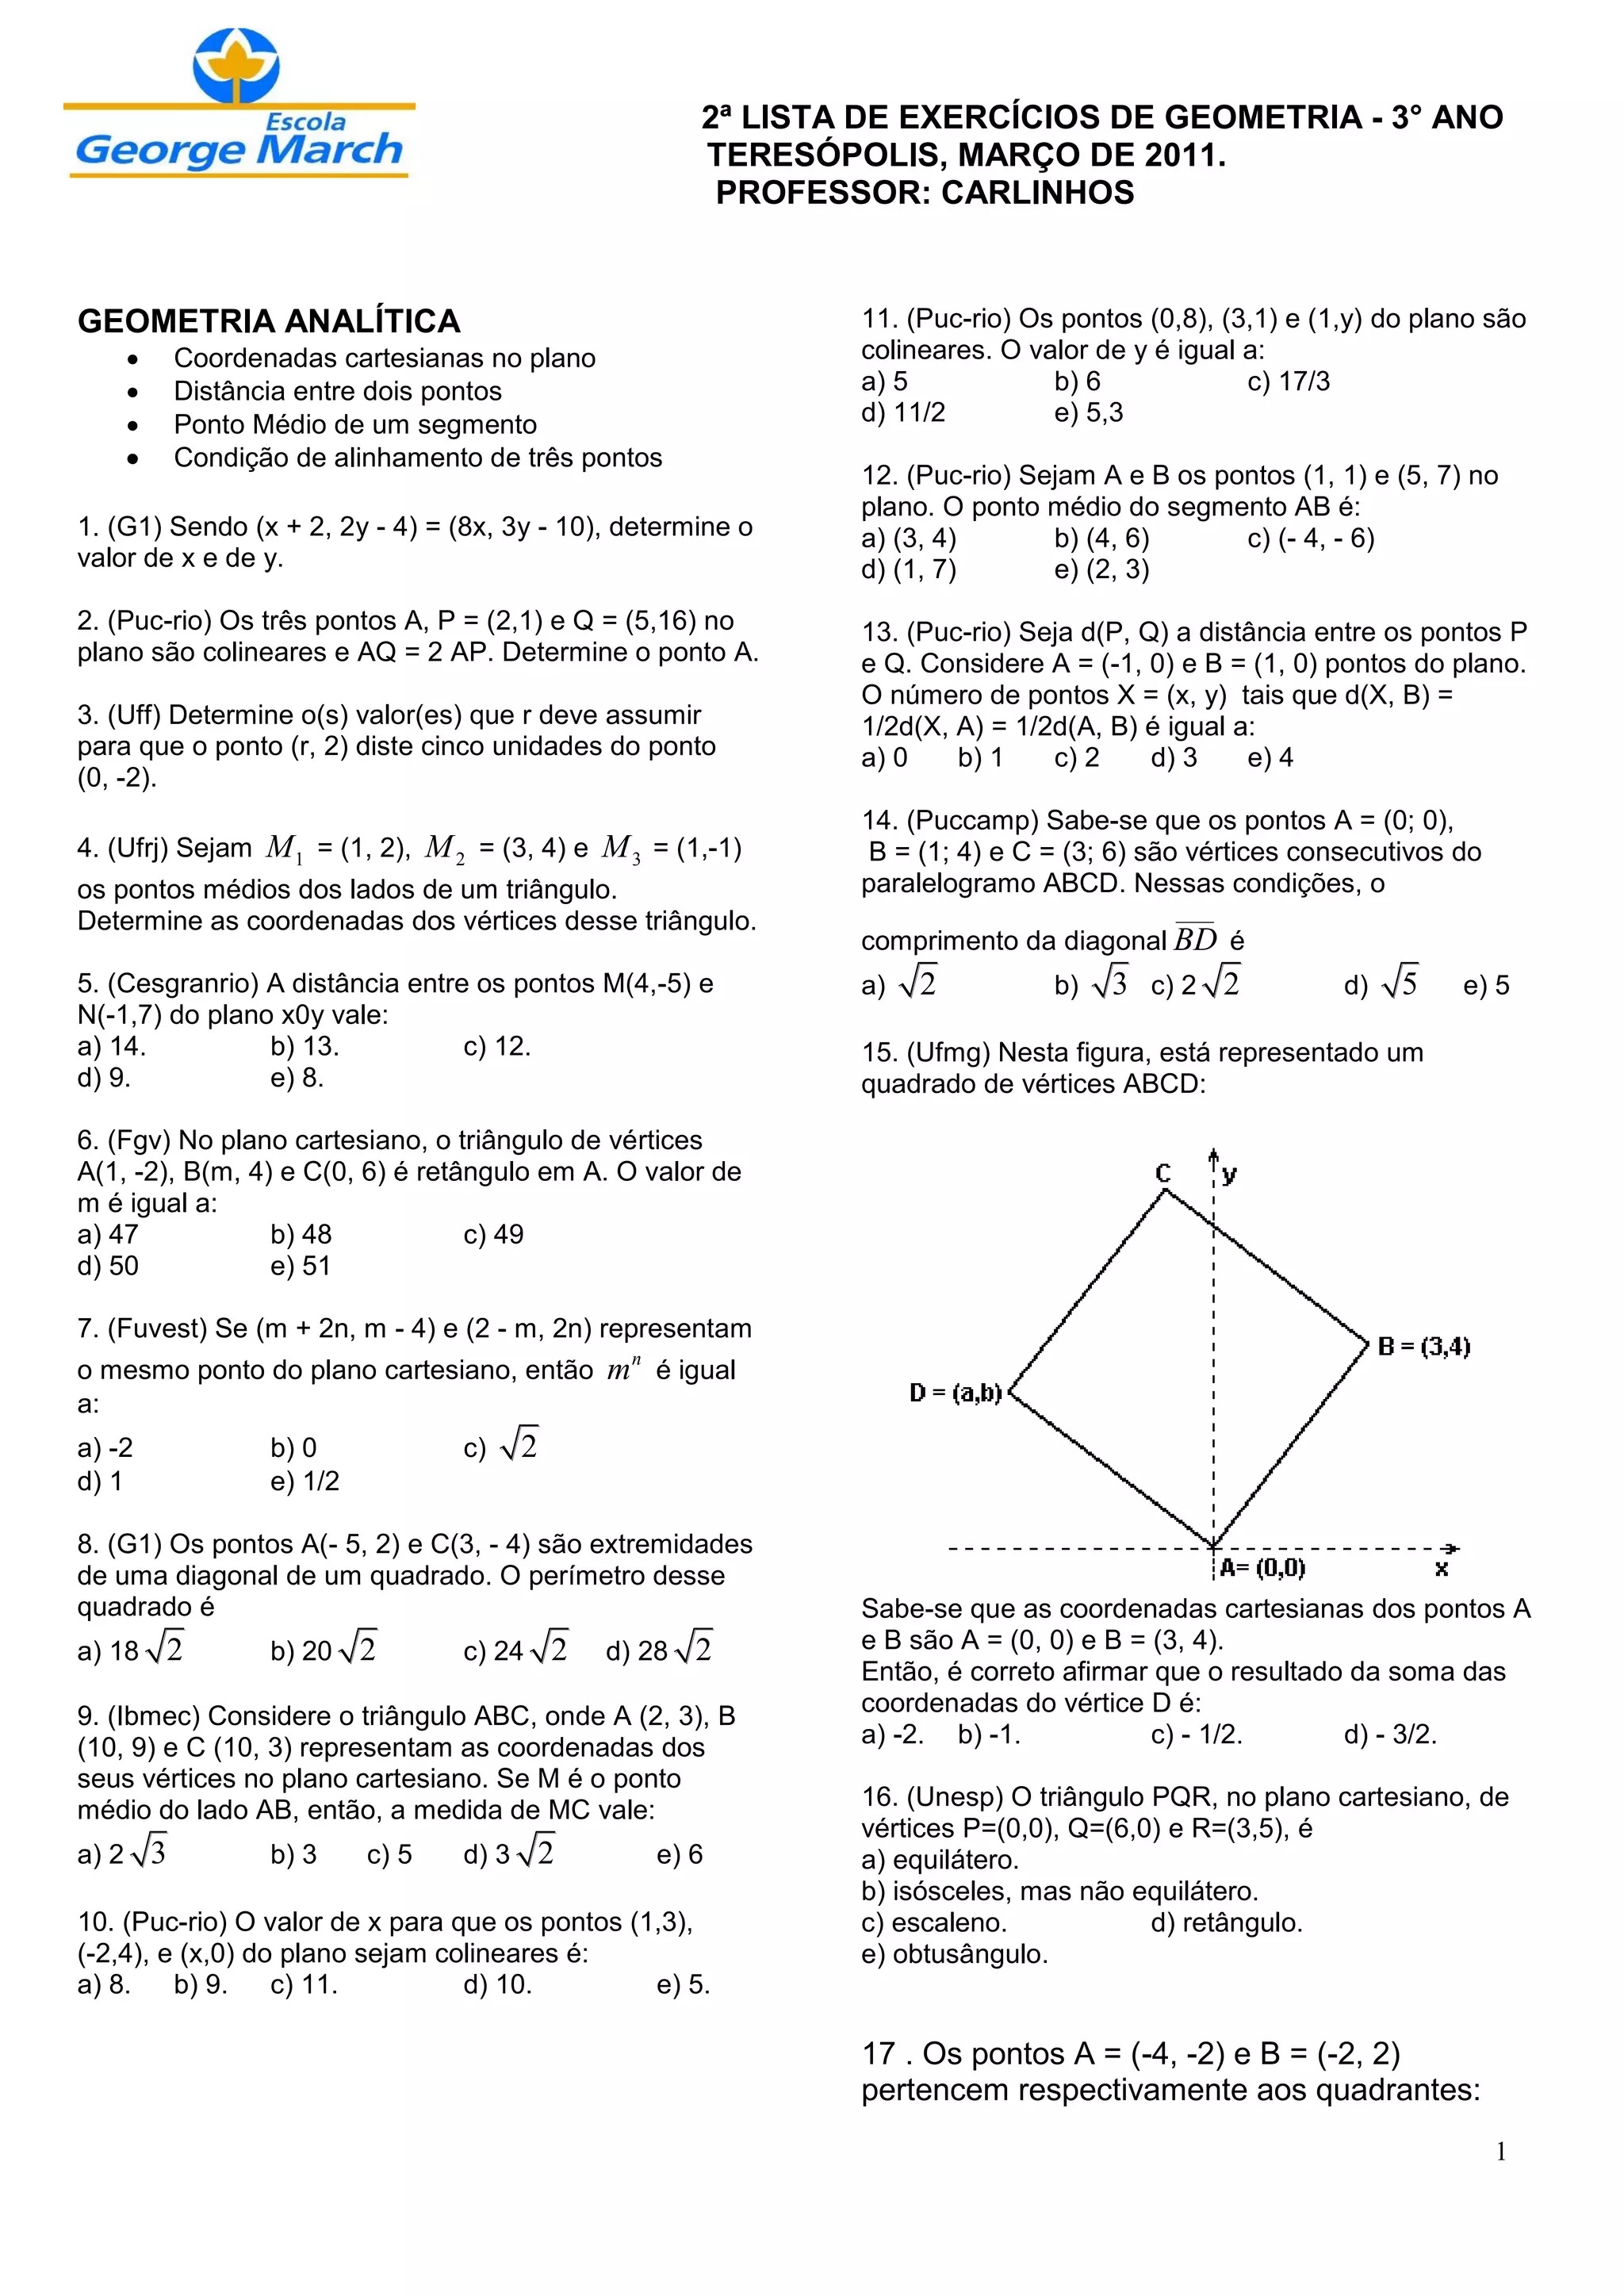 Lista de exercícios geometria analítica pdf com gabarito